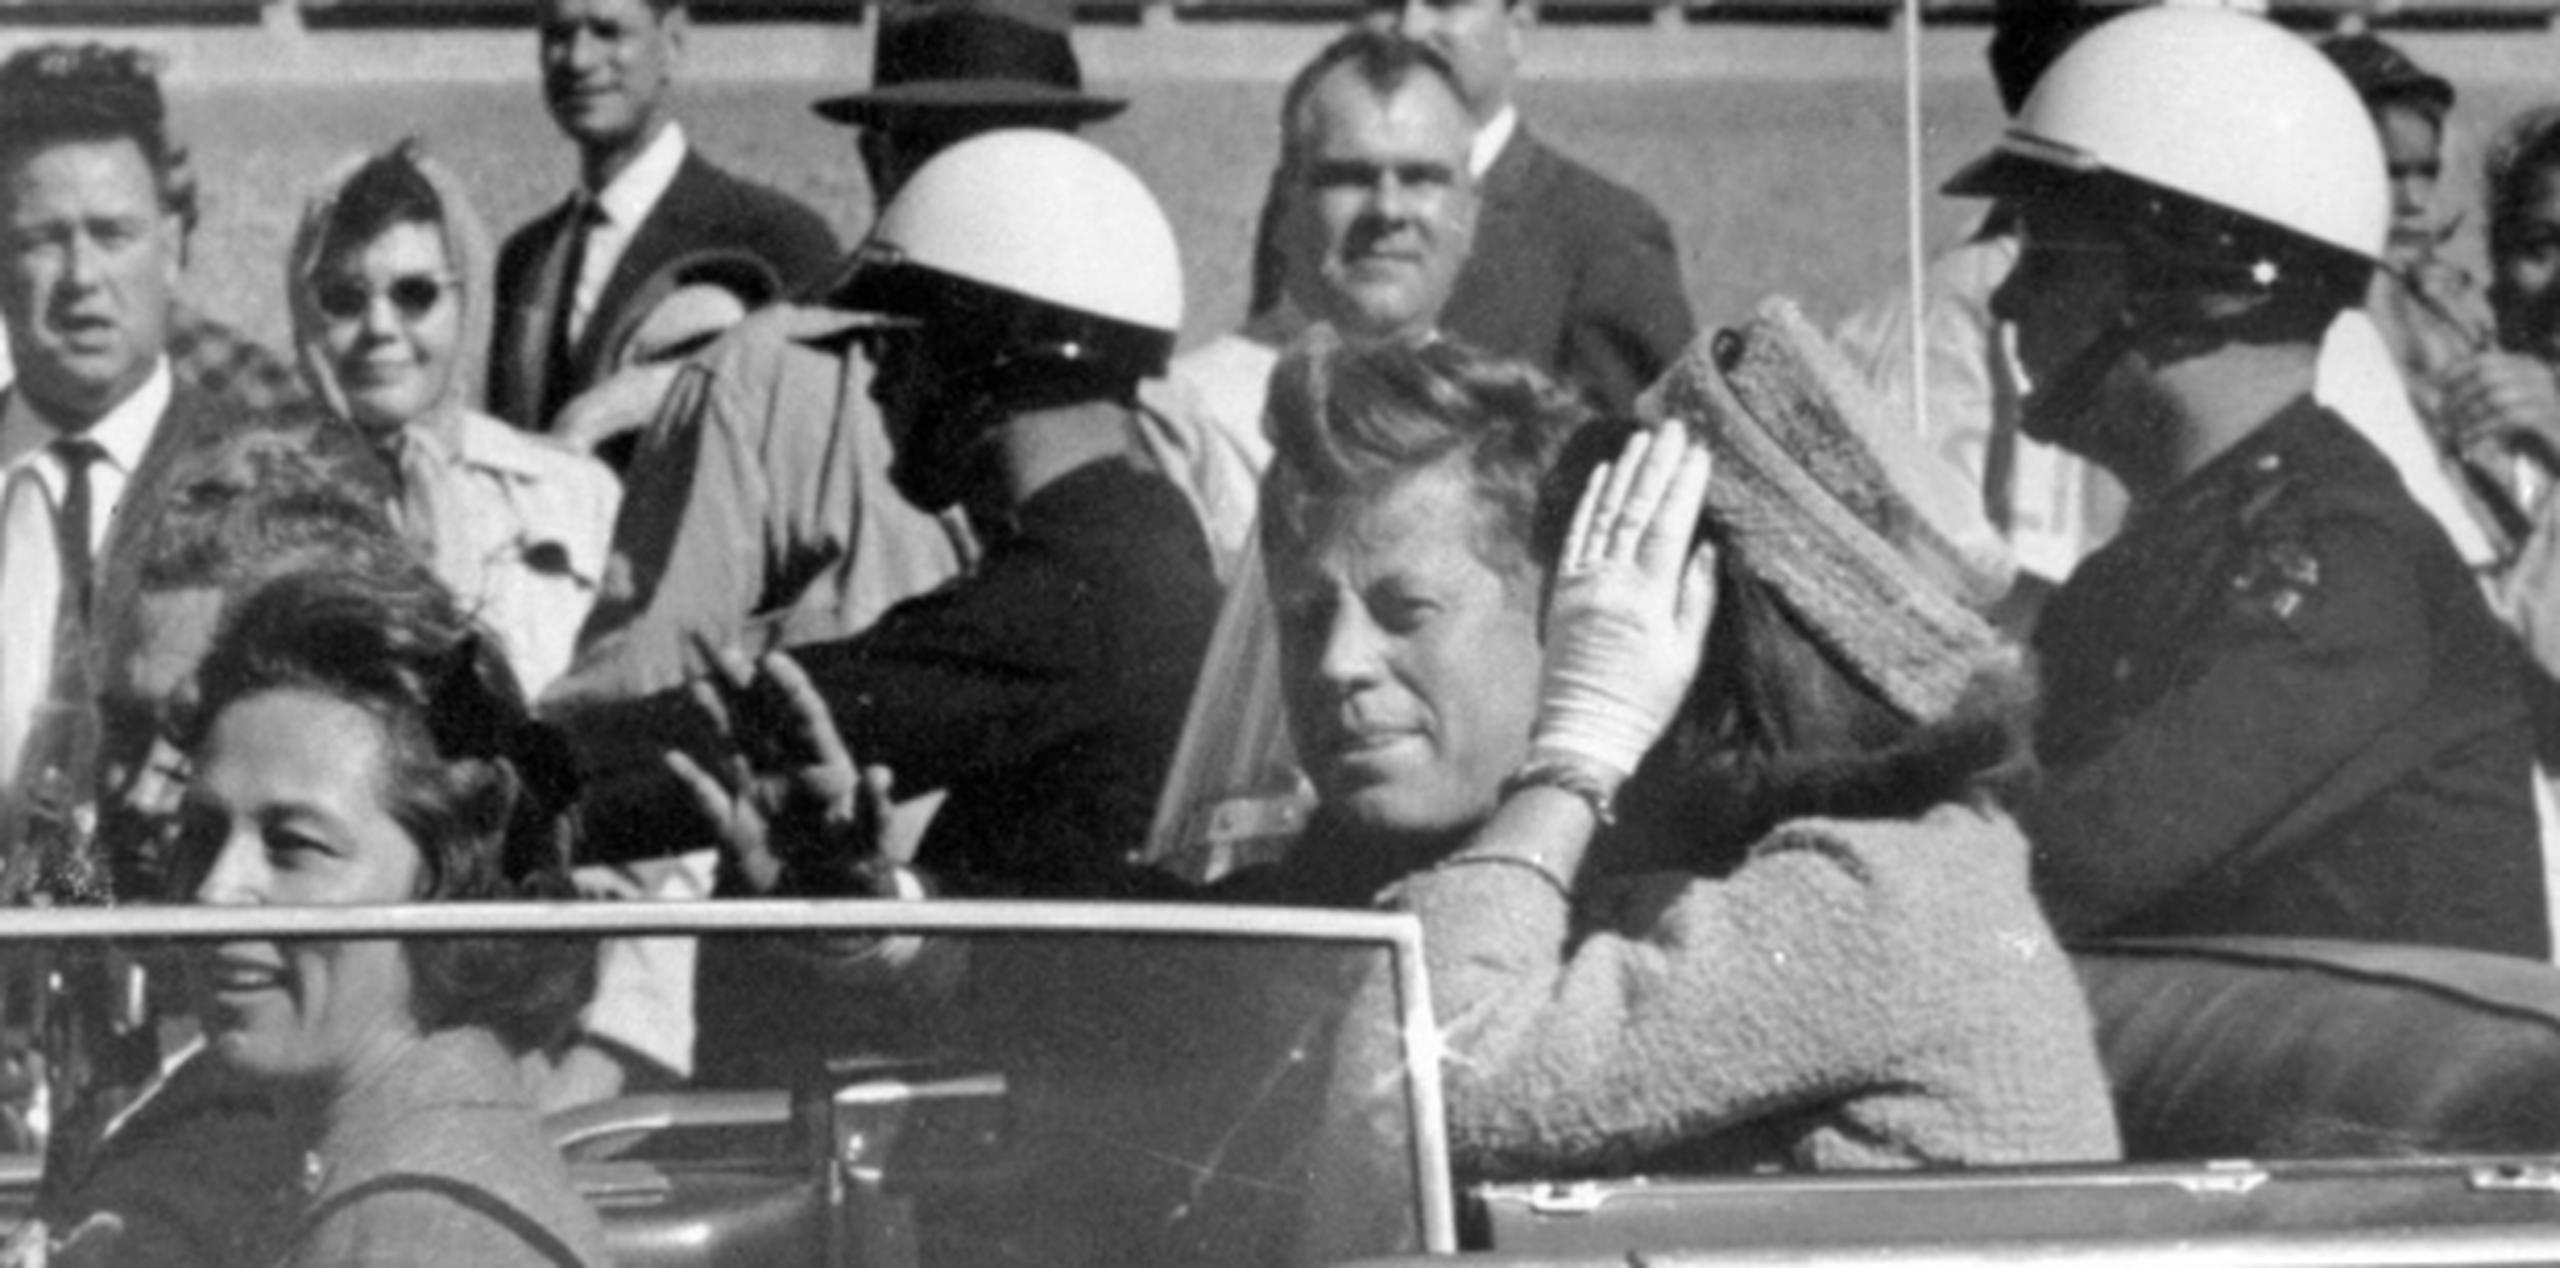 Los documentos sobre el magnicidio de Kennedy empiezan a revelar más detalles sobre su asesino, Lee Harvey Oswald. (AP)